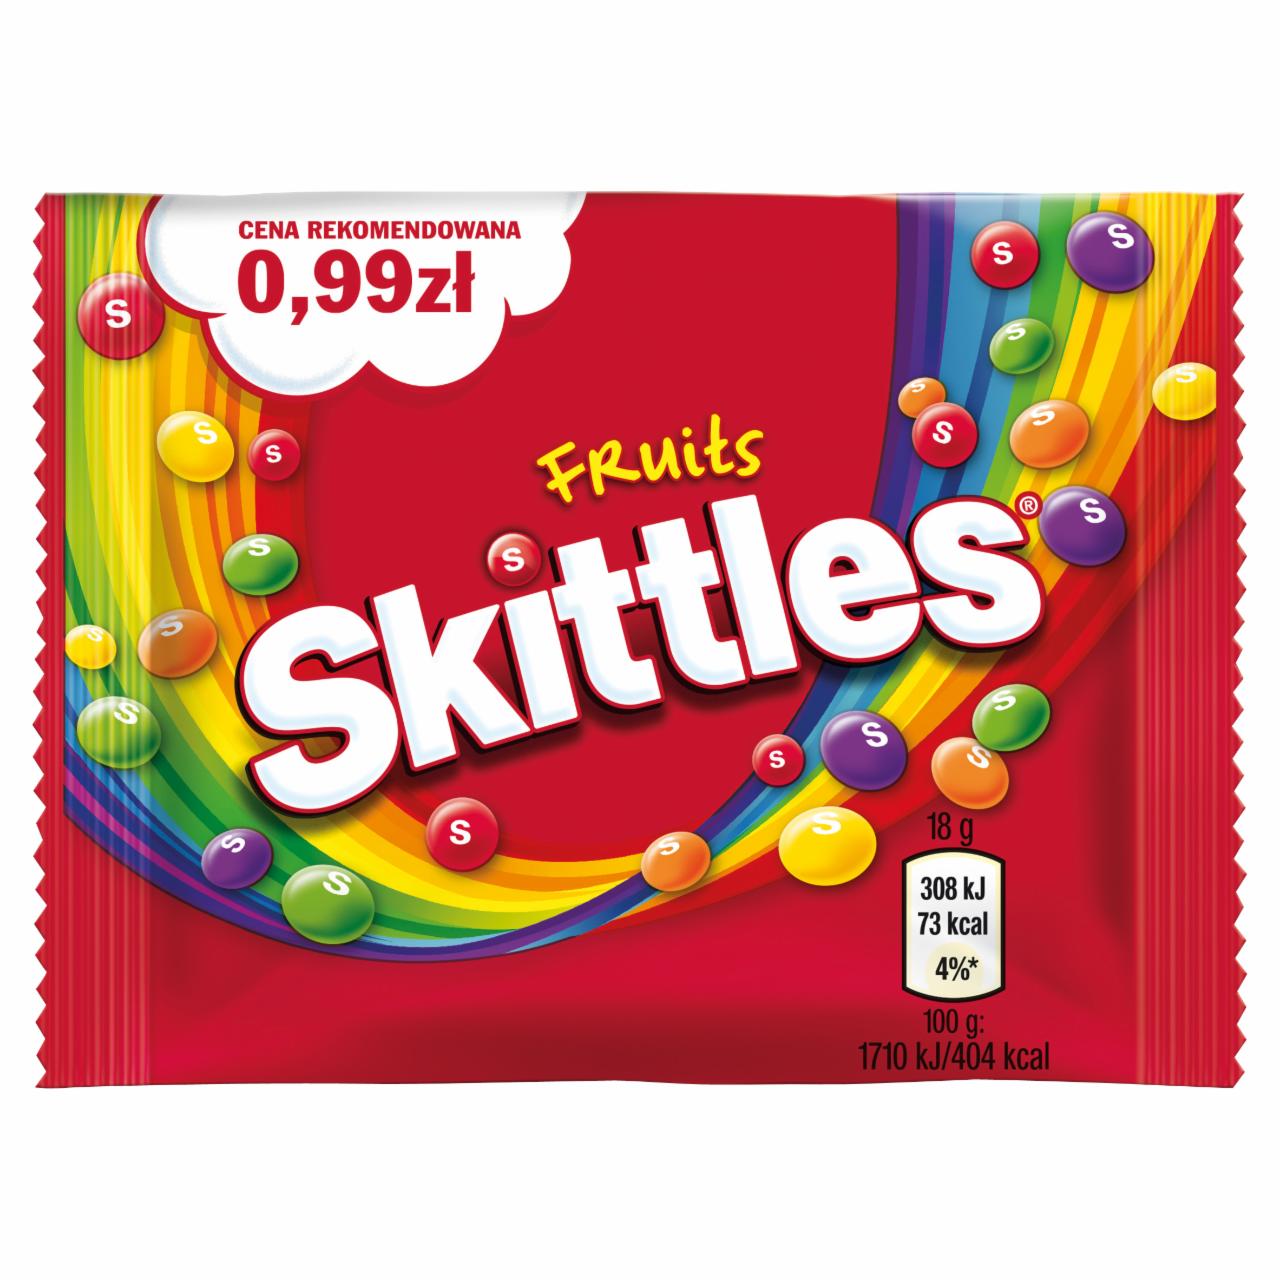 Zdjęcia - Skittles Fruits Cukierki do żucia 18 g